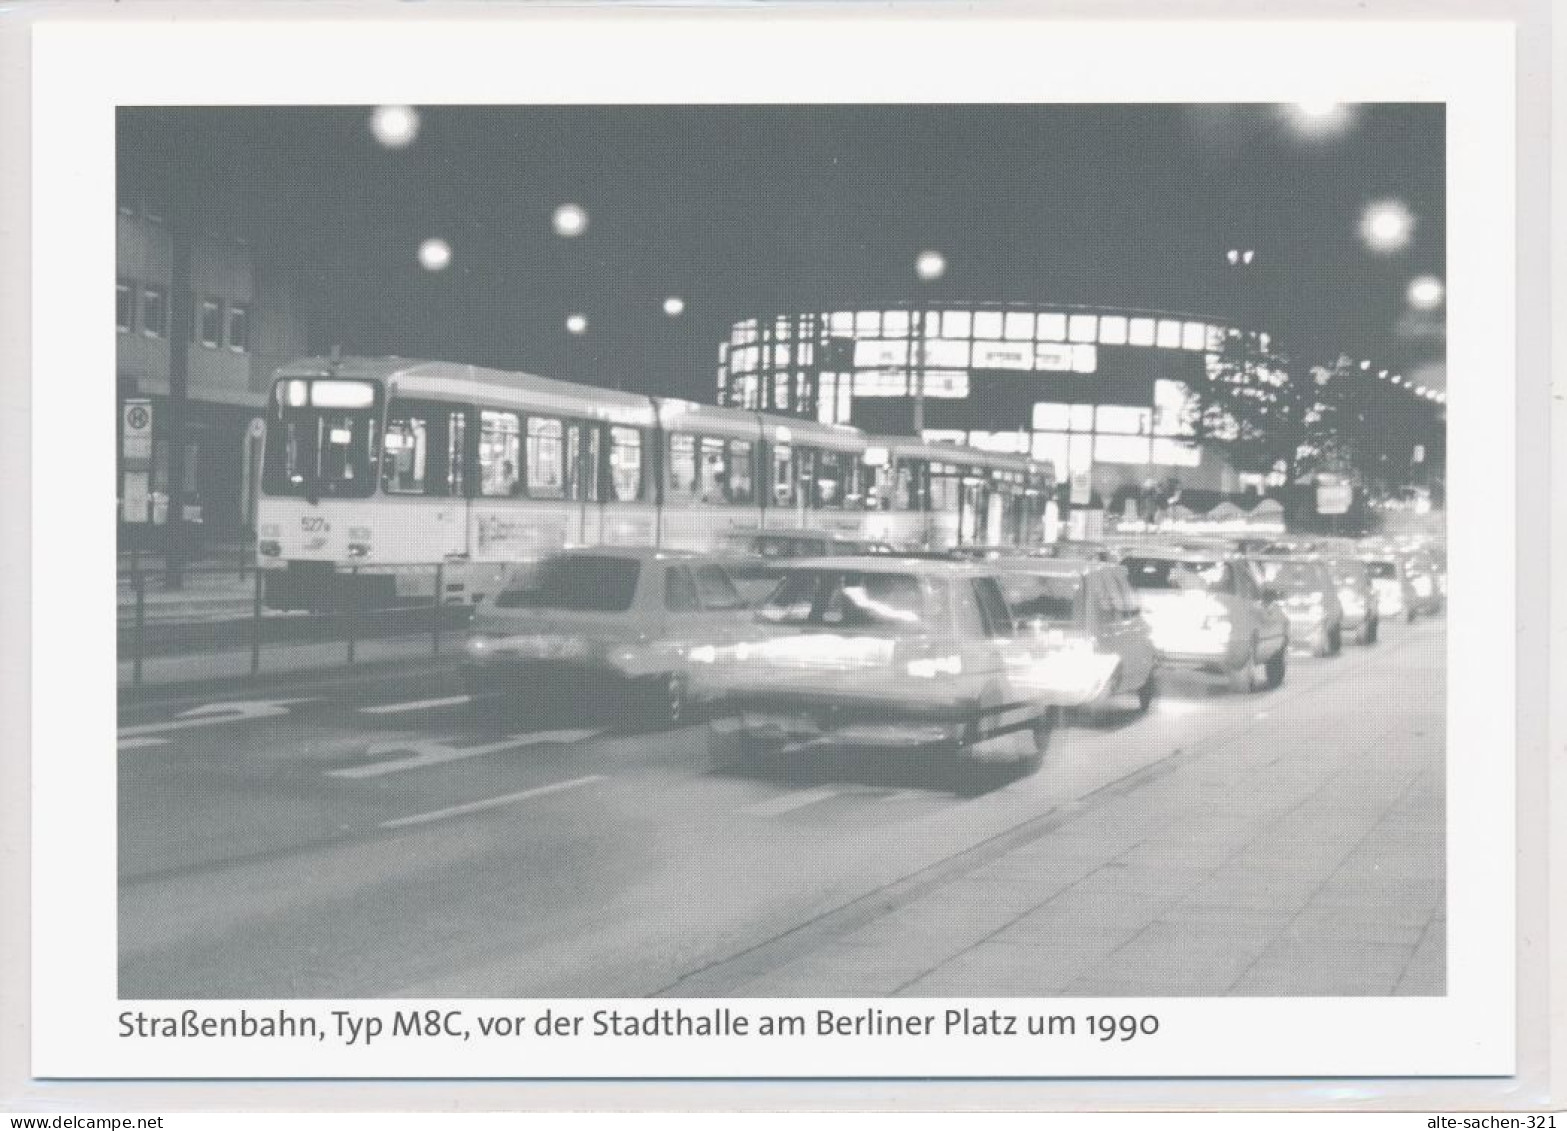 10 AK Straßenbahn Stadtbahn Bielefeld 1915 - 1990 Repro-Serie von 2006 (15 Jahre Stadtbahn)